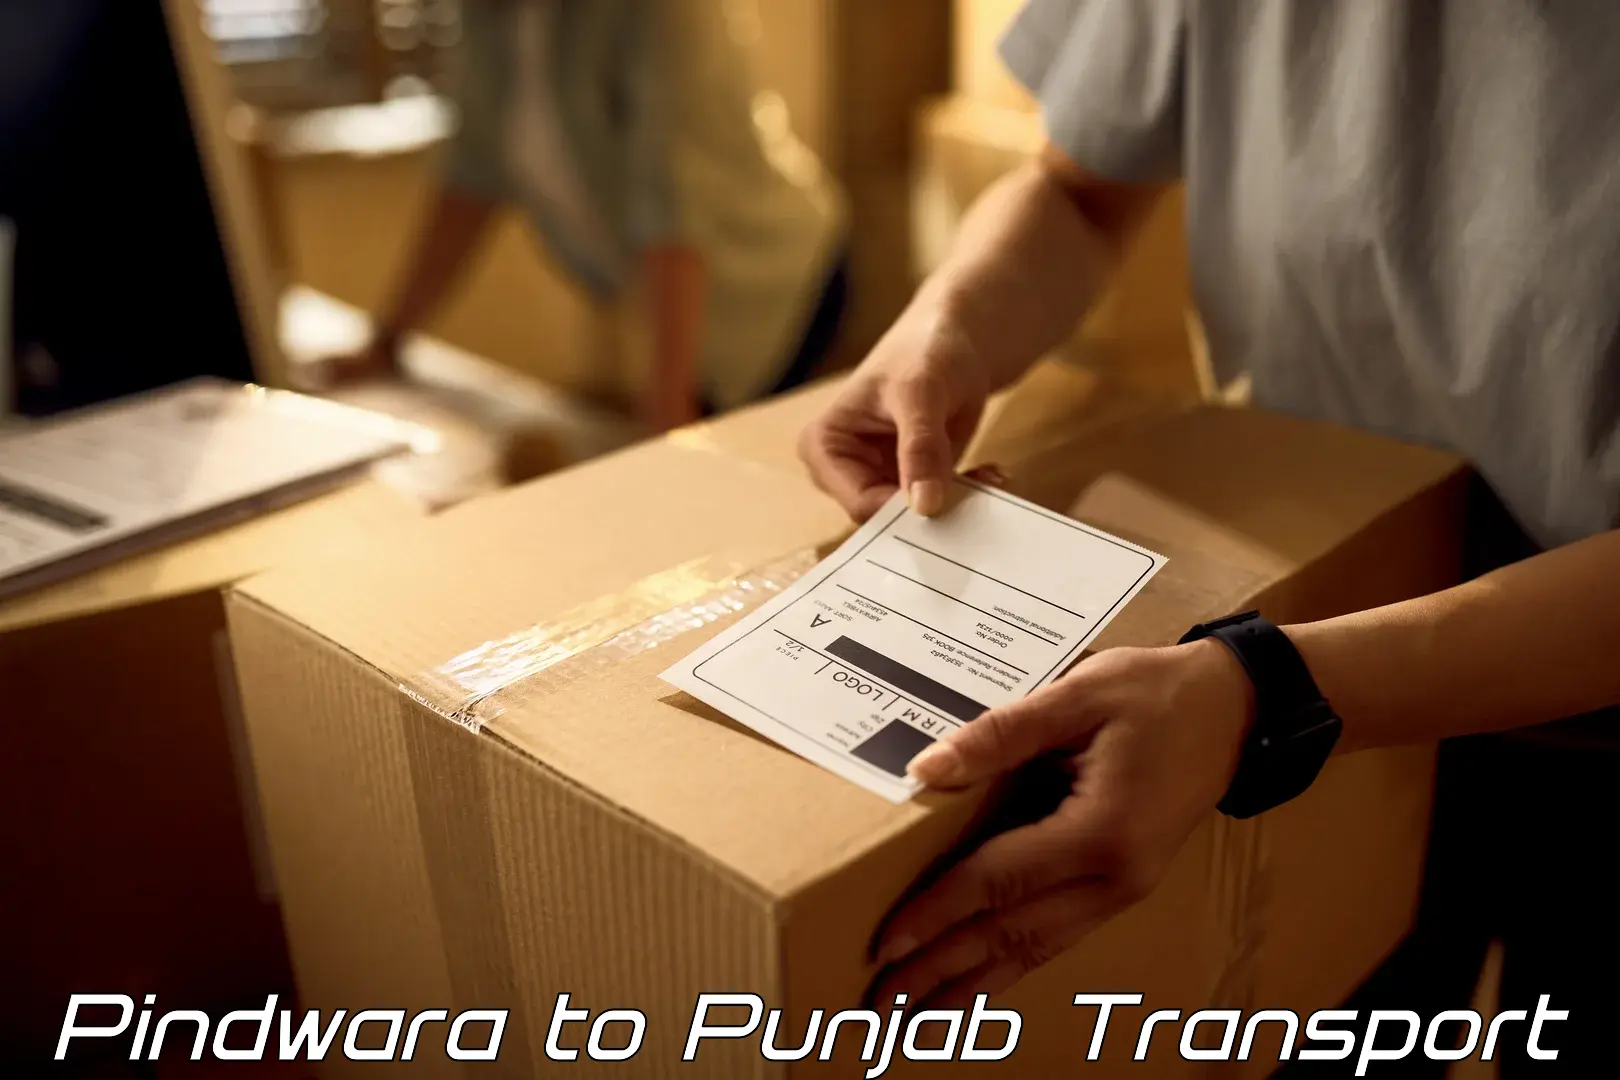 Lorry transport service Pindwara to Raikot